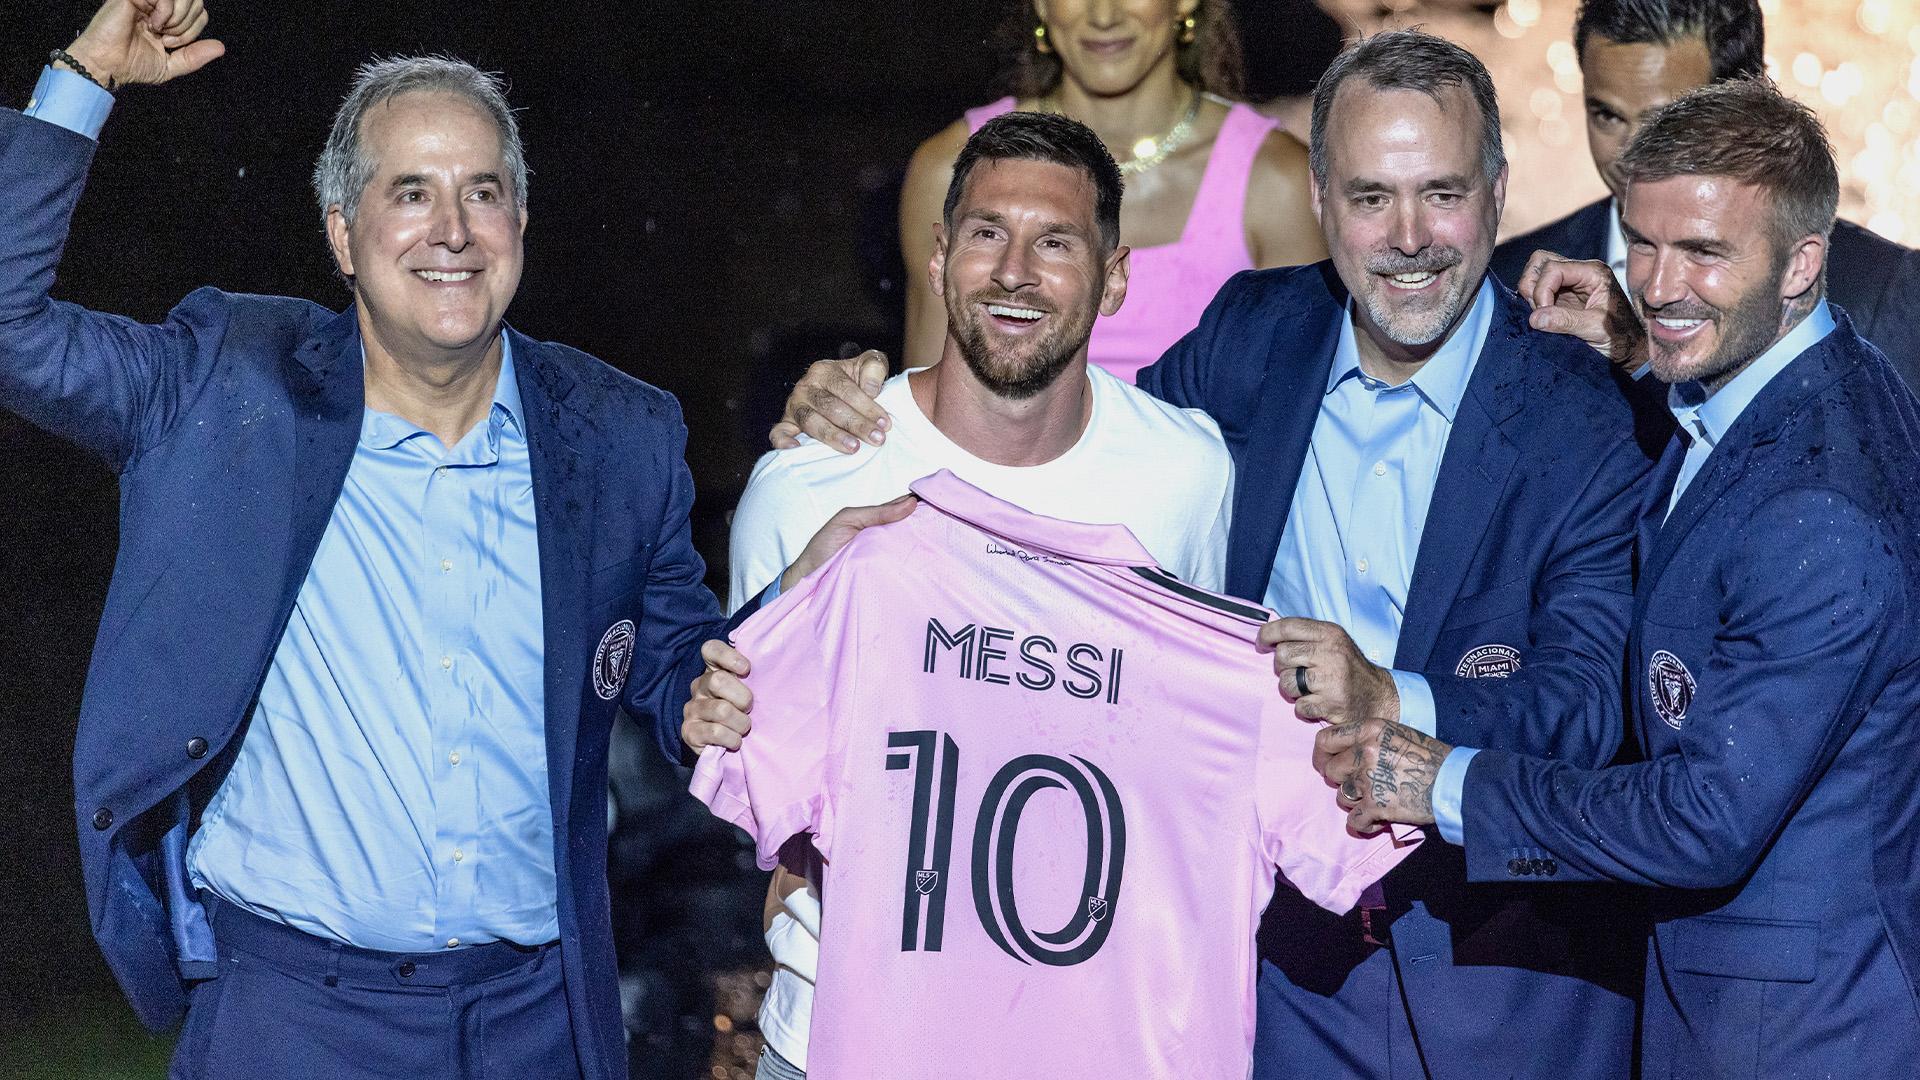 ¡Messi con la camiseta! Lio fue presentado en el Inter Miami